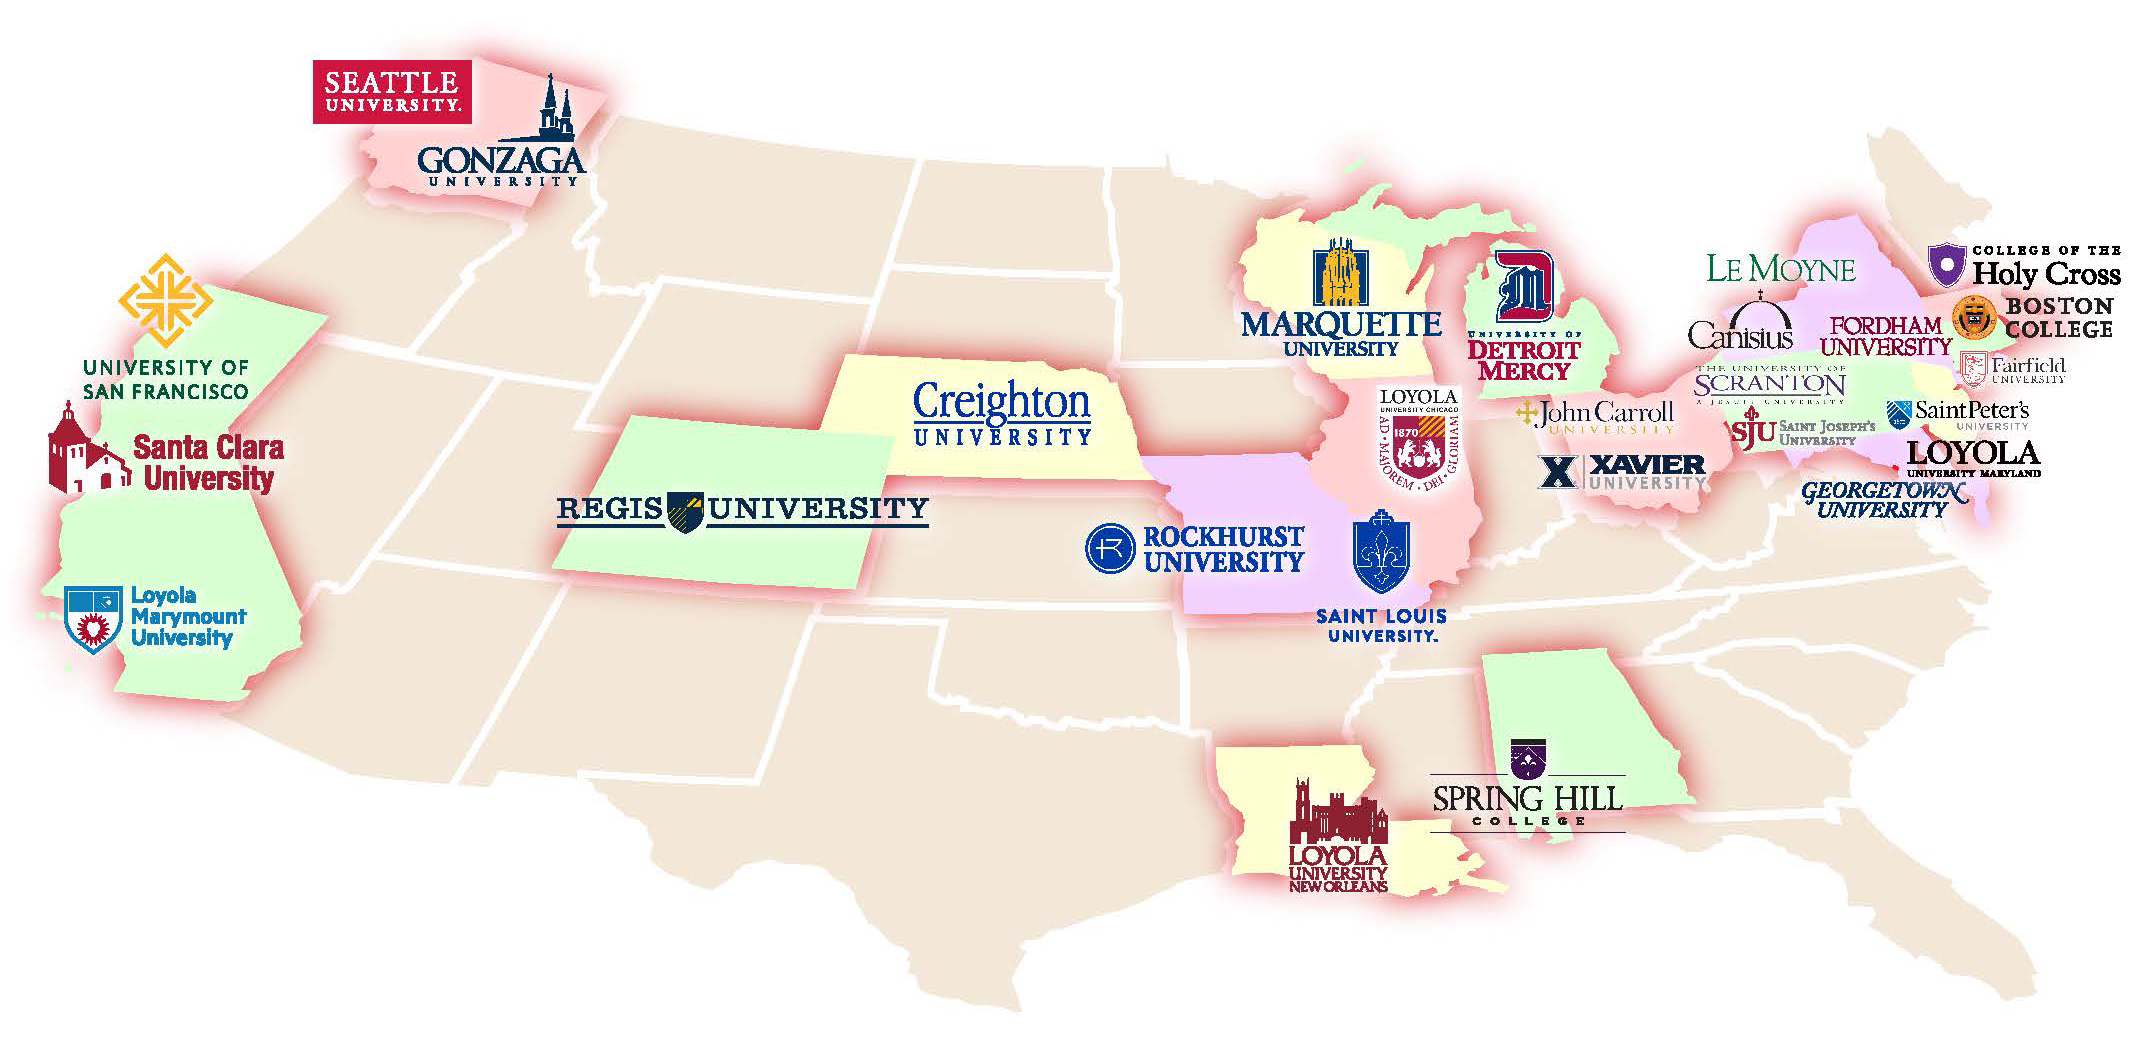 28 jesuit colleges